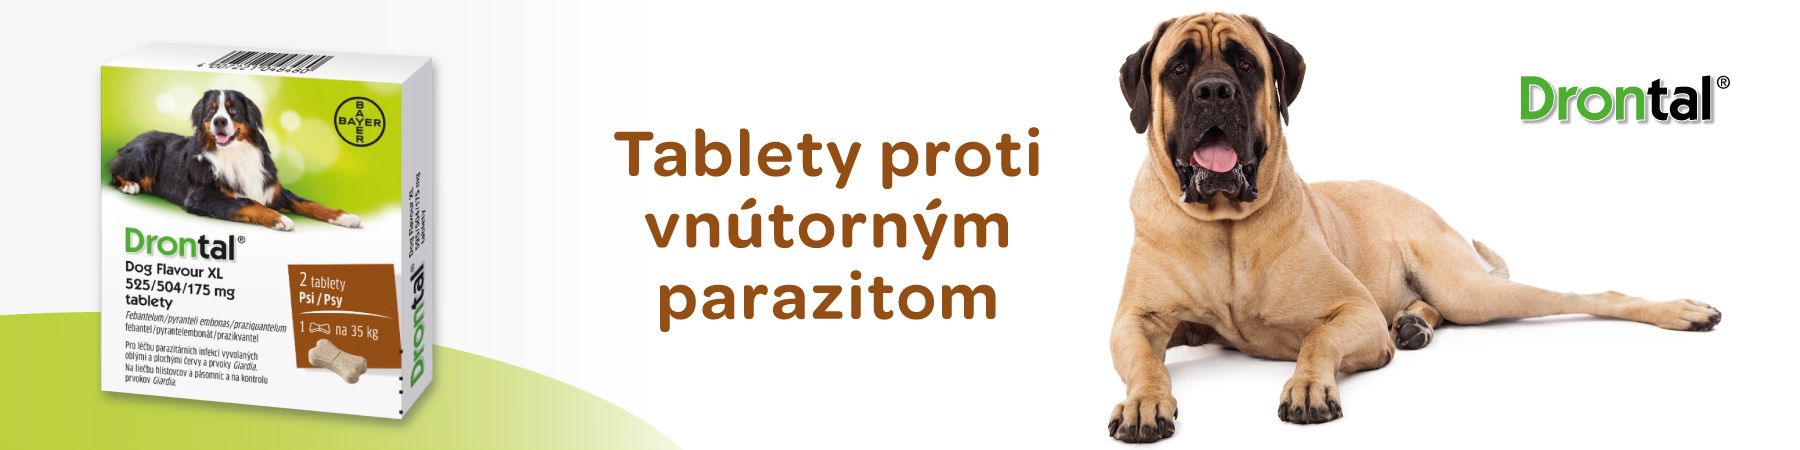 drontal dog flavour tablety s příchutí